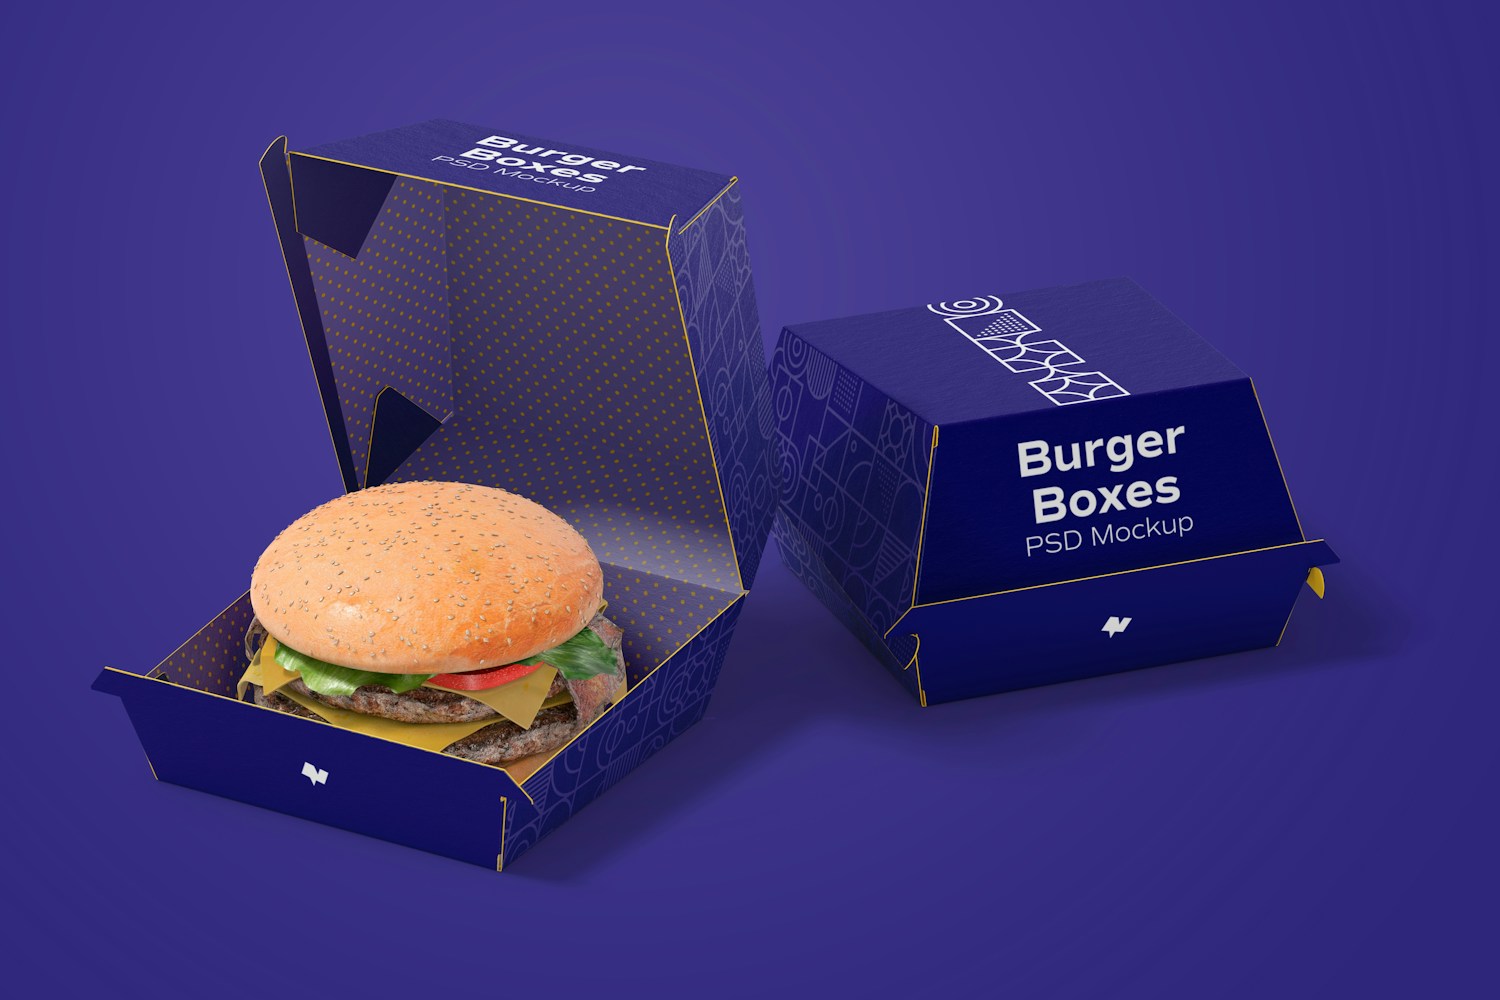 La hamburguesa que acompaña las cajas es el toque final que tu diseño necesita para lucir totalmente realista.